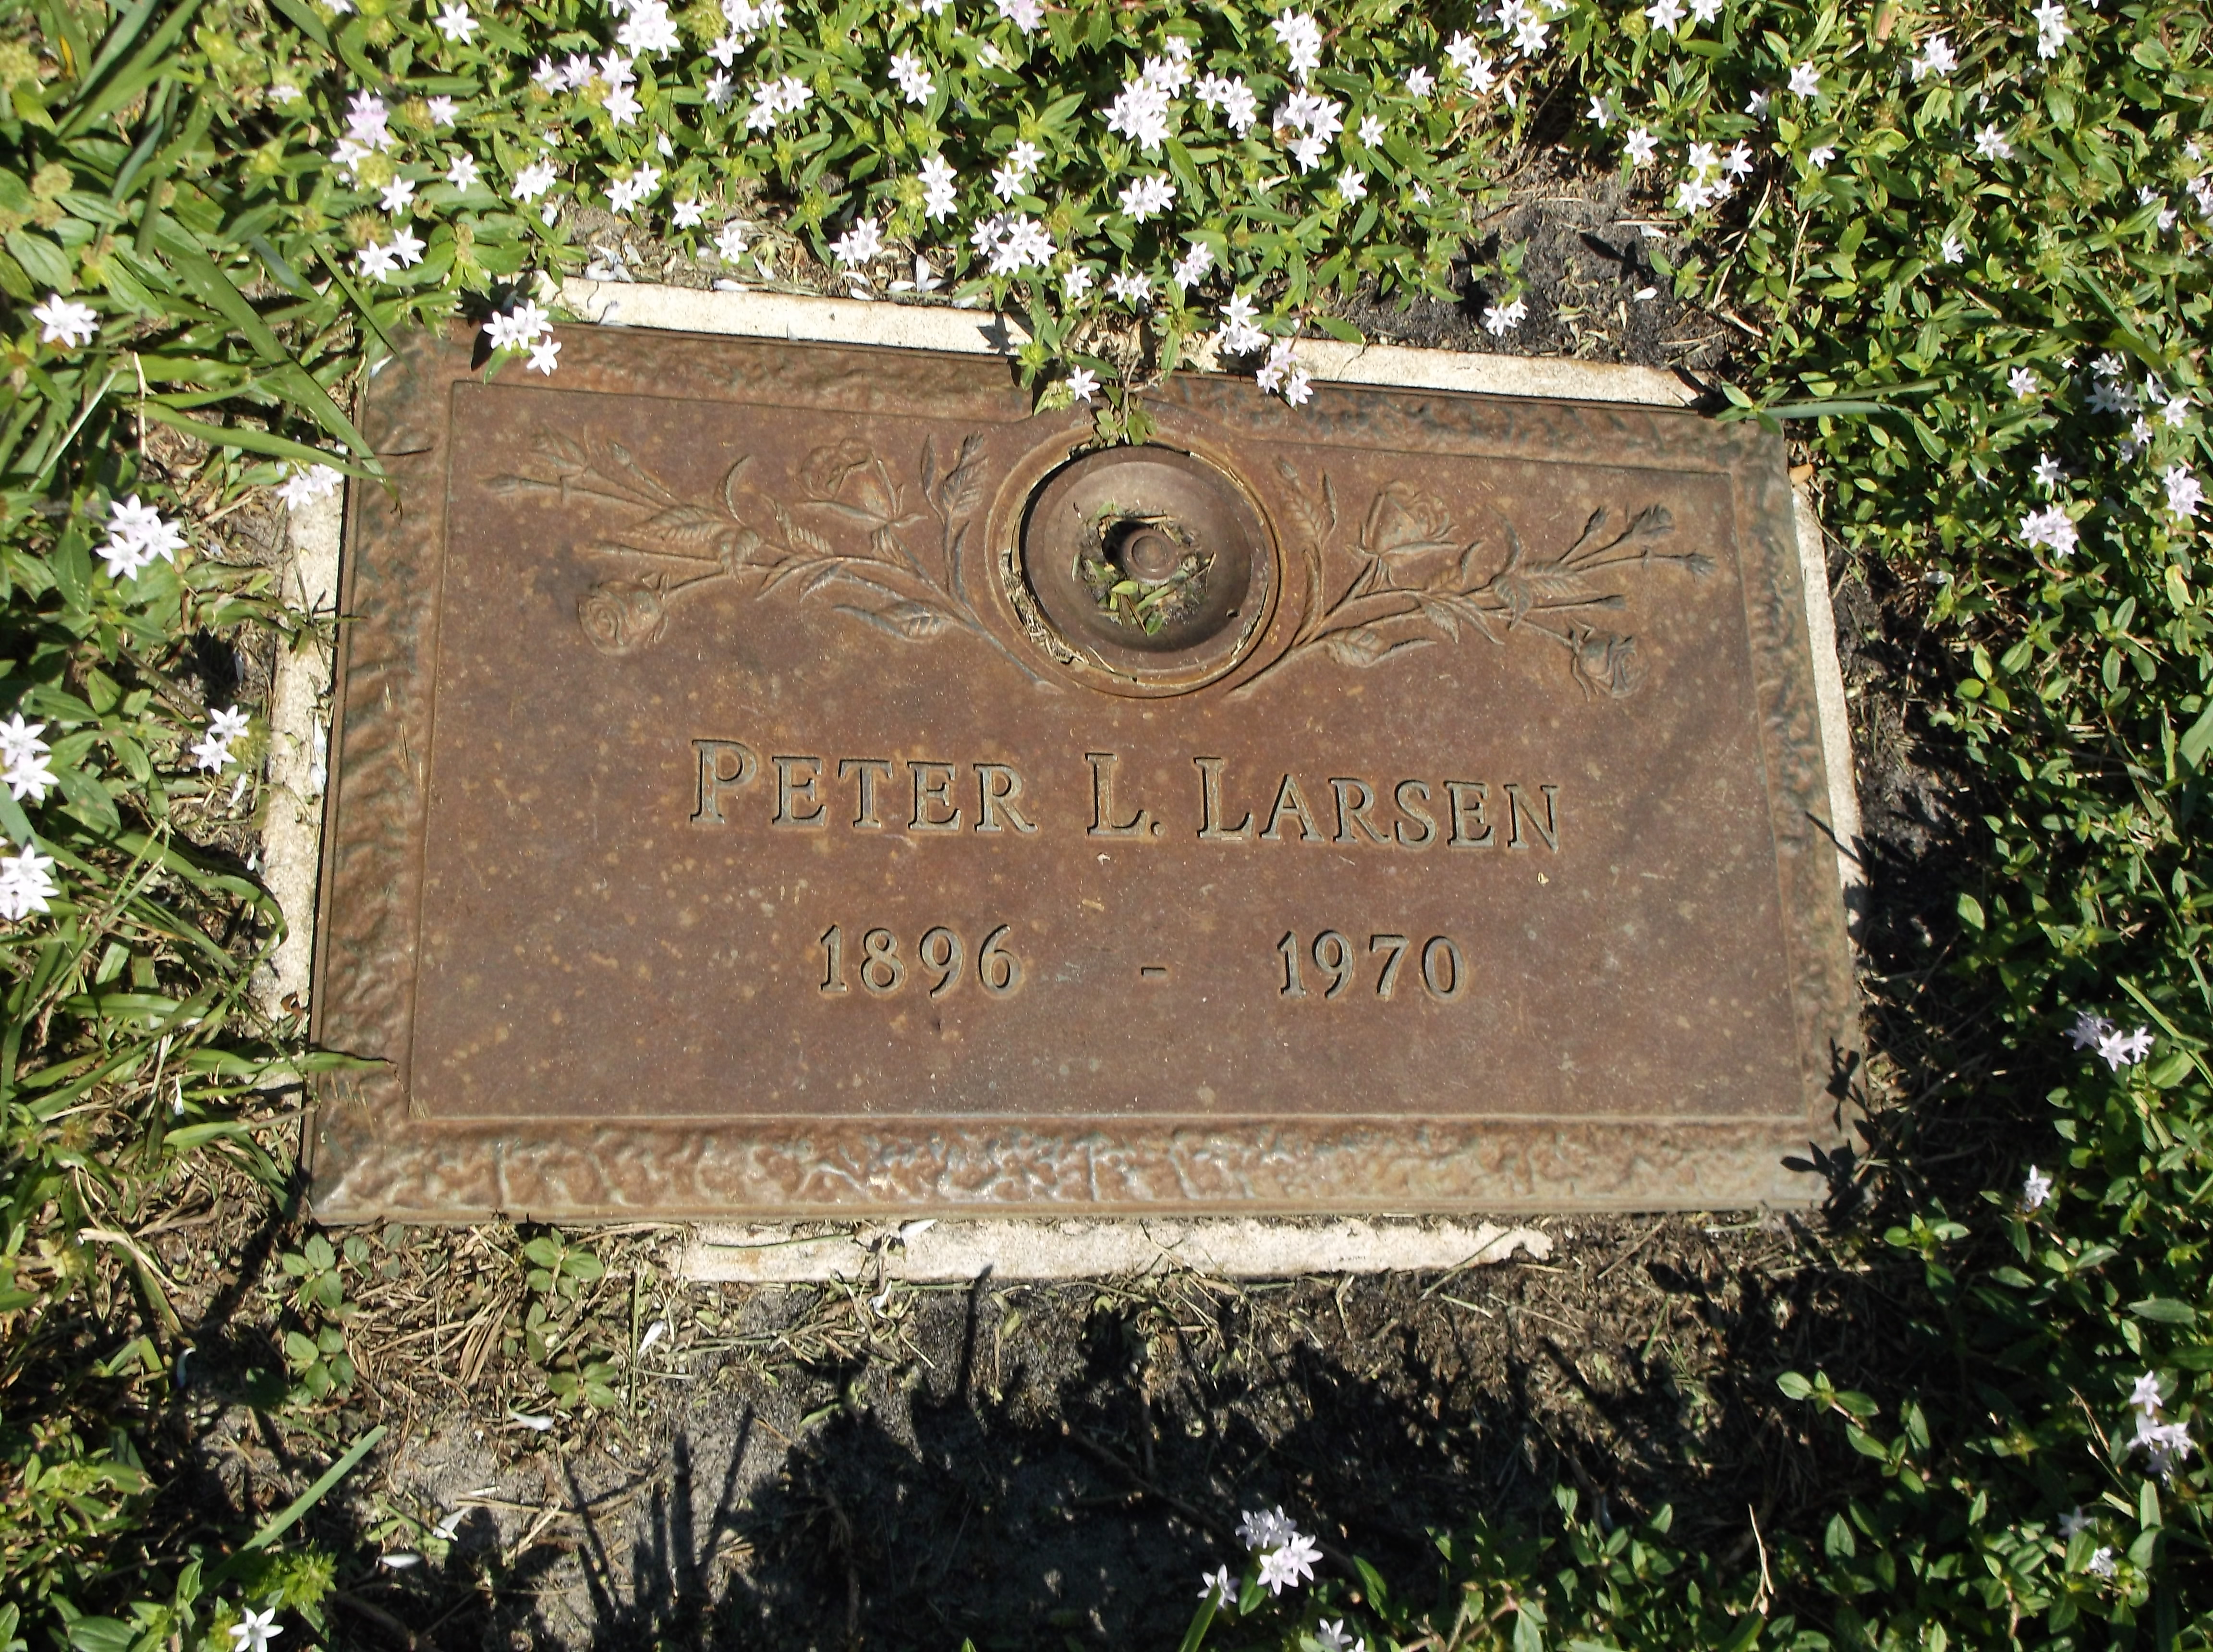 Peter L Larsen